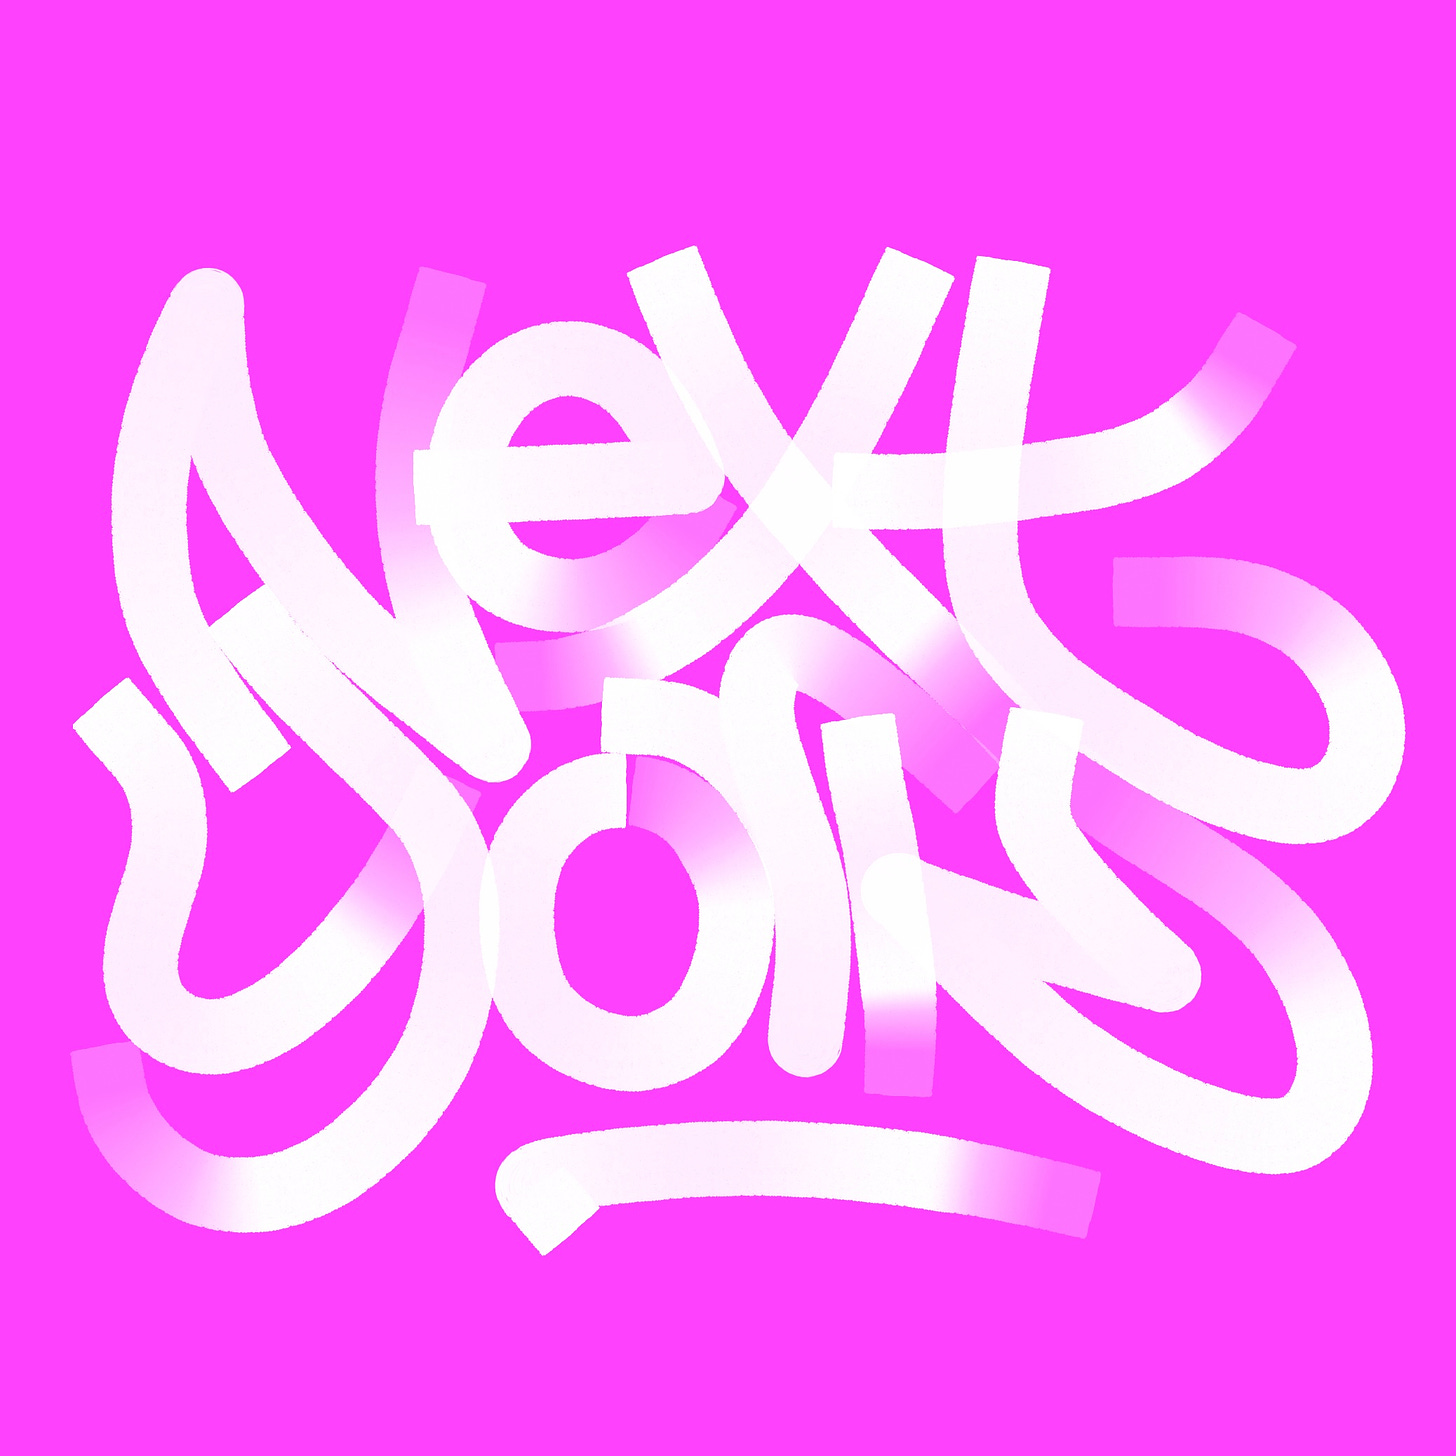 Next York logo, white on pink, ravetag style